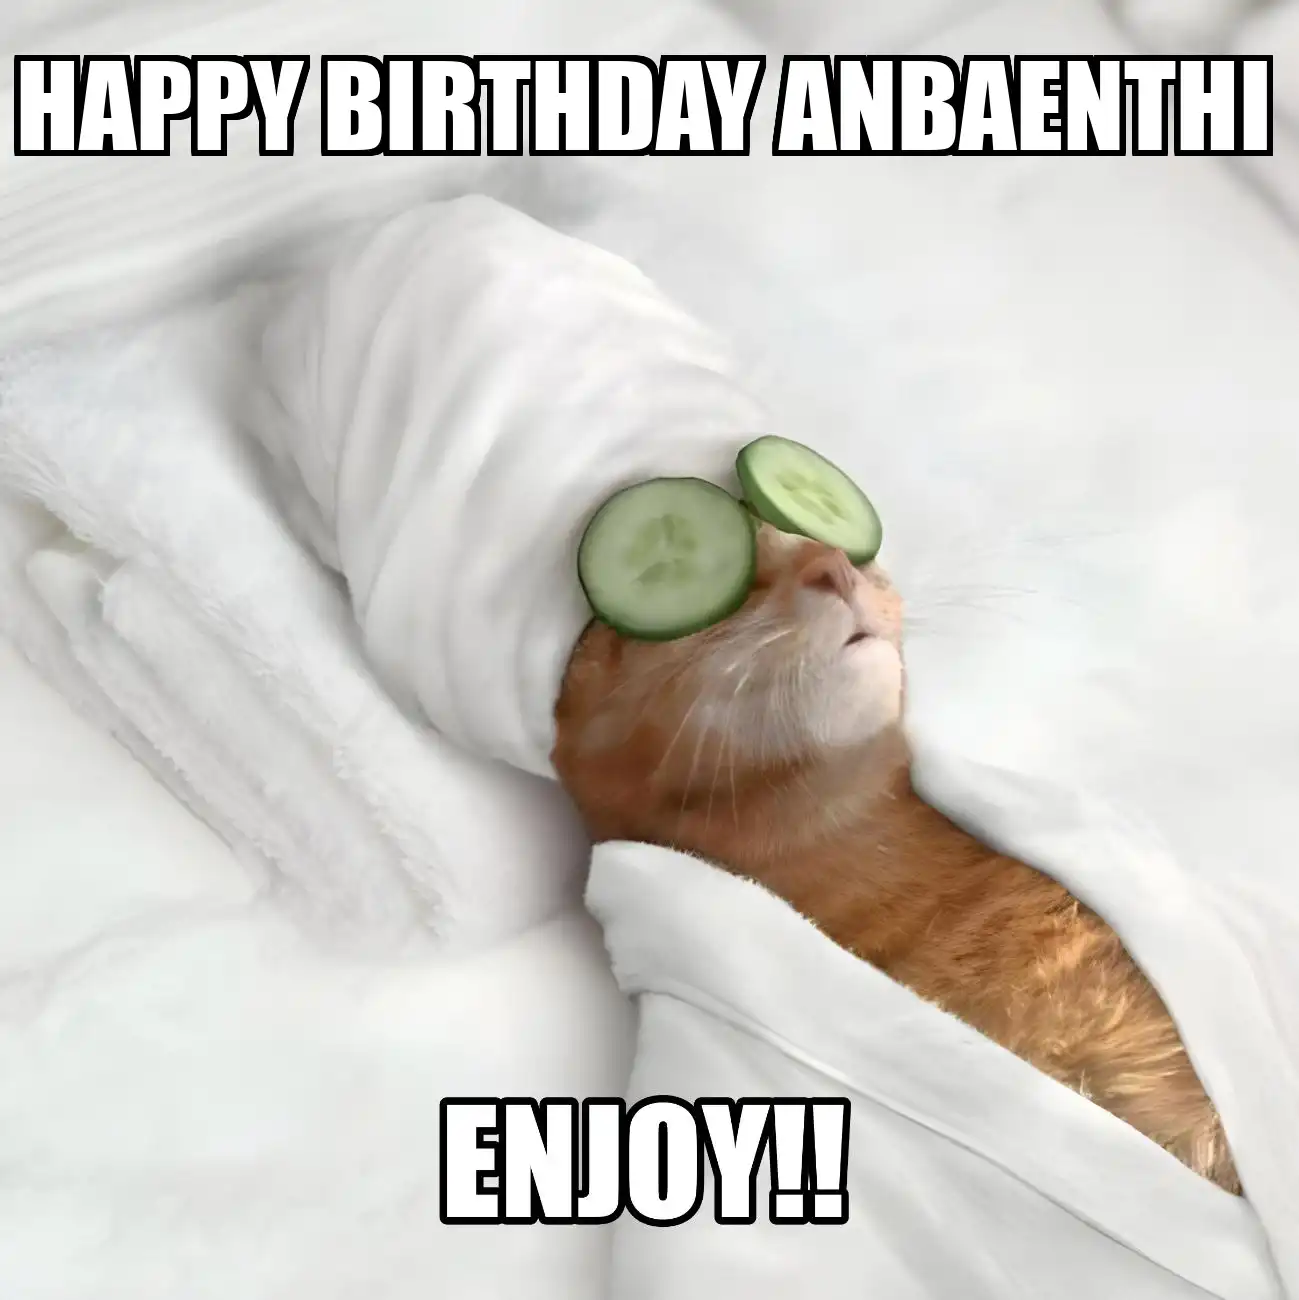 Happy Birthday Anbaenthi Enjoy Cat Meme